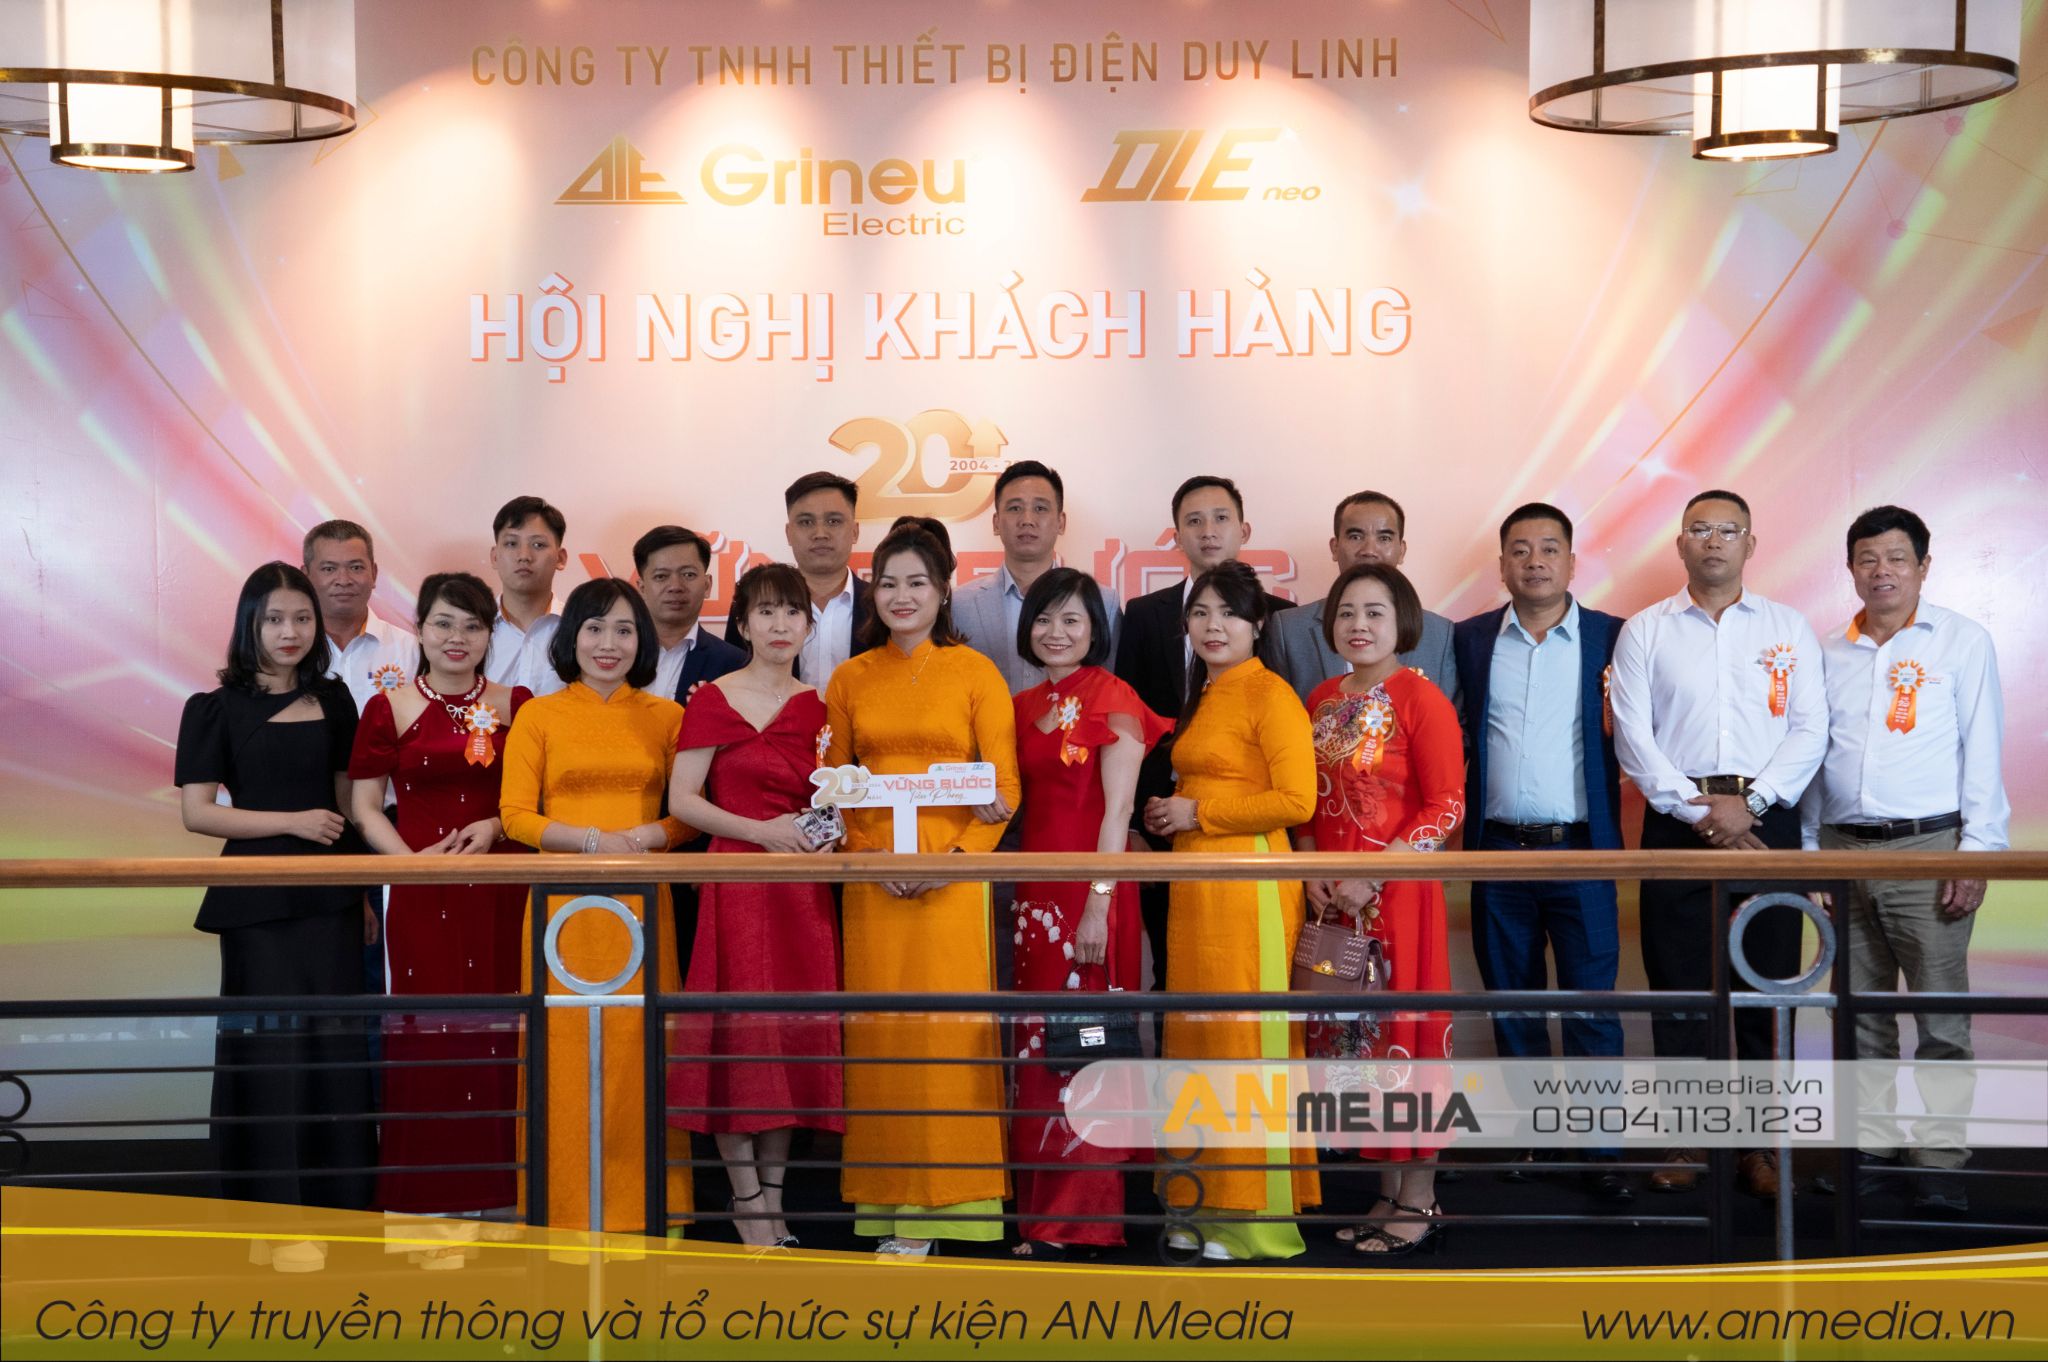 Thăng hoa cảm xúc cùng Lễ kỷ niệm 20 năm thành lập công ty TNHH thiết bị điện Duy Linh